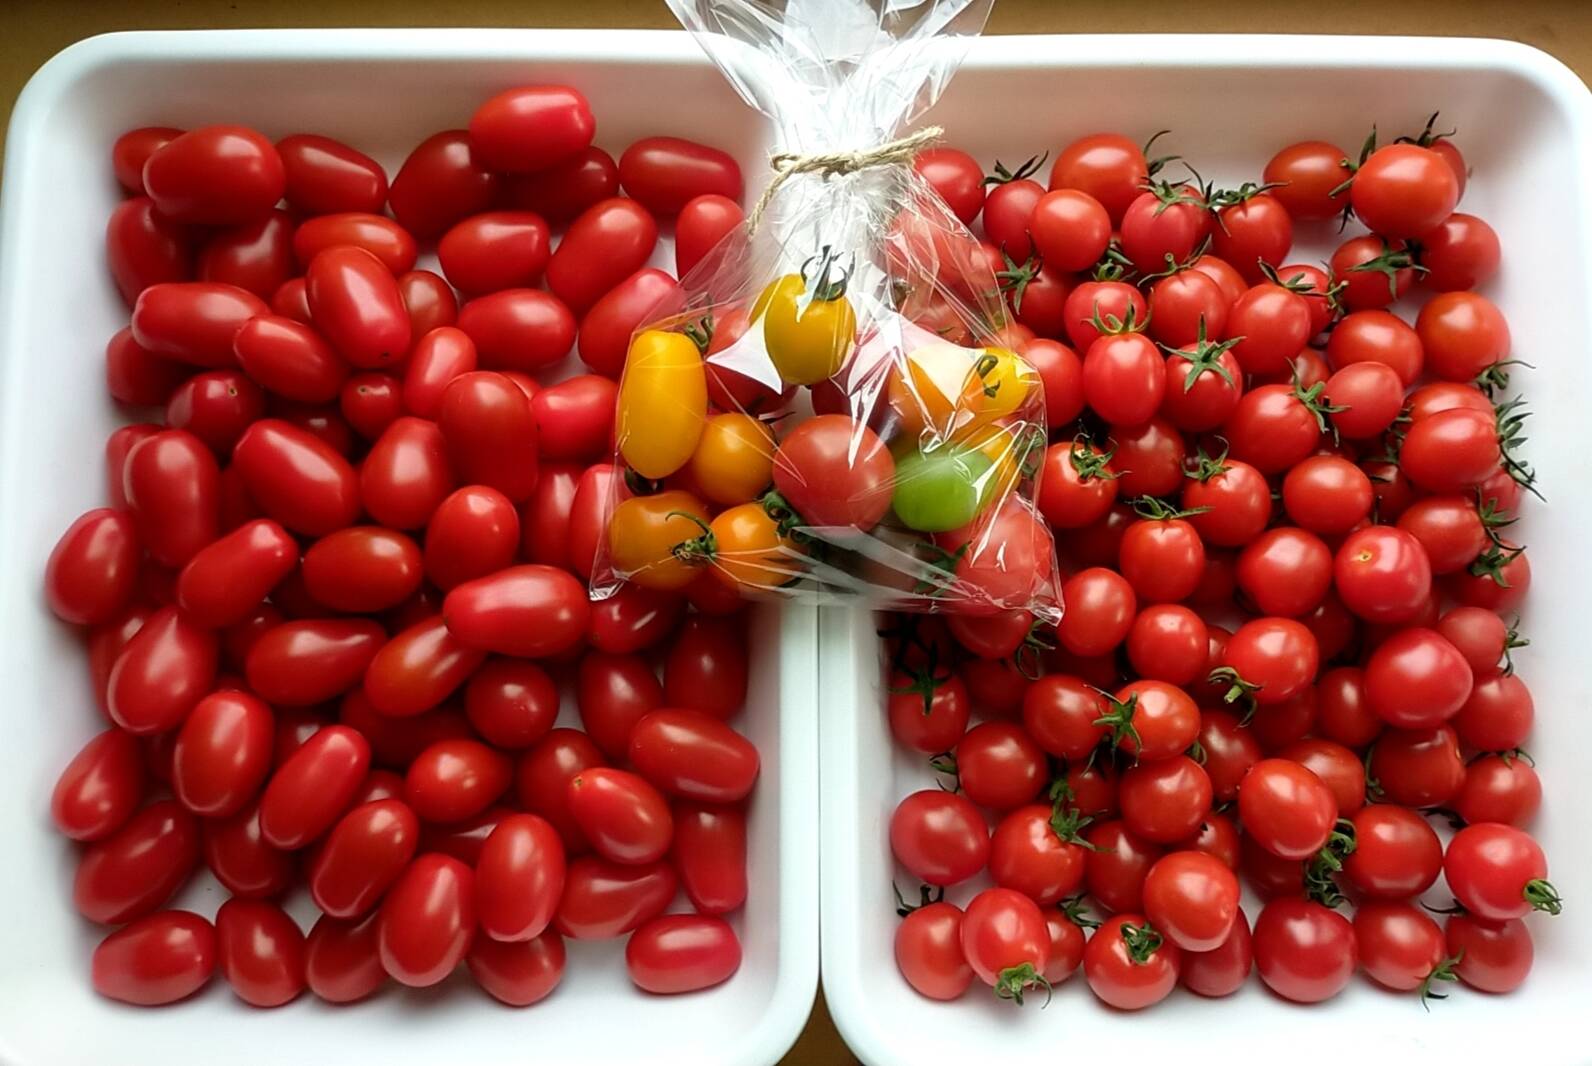 イチオシBOX】☆ミニトマト食べ比べ☆化学農薬不使用ミニトマト、甘っ